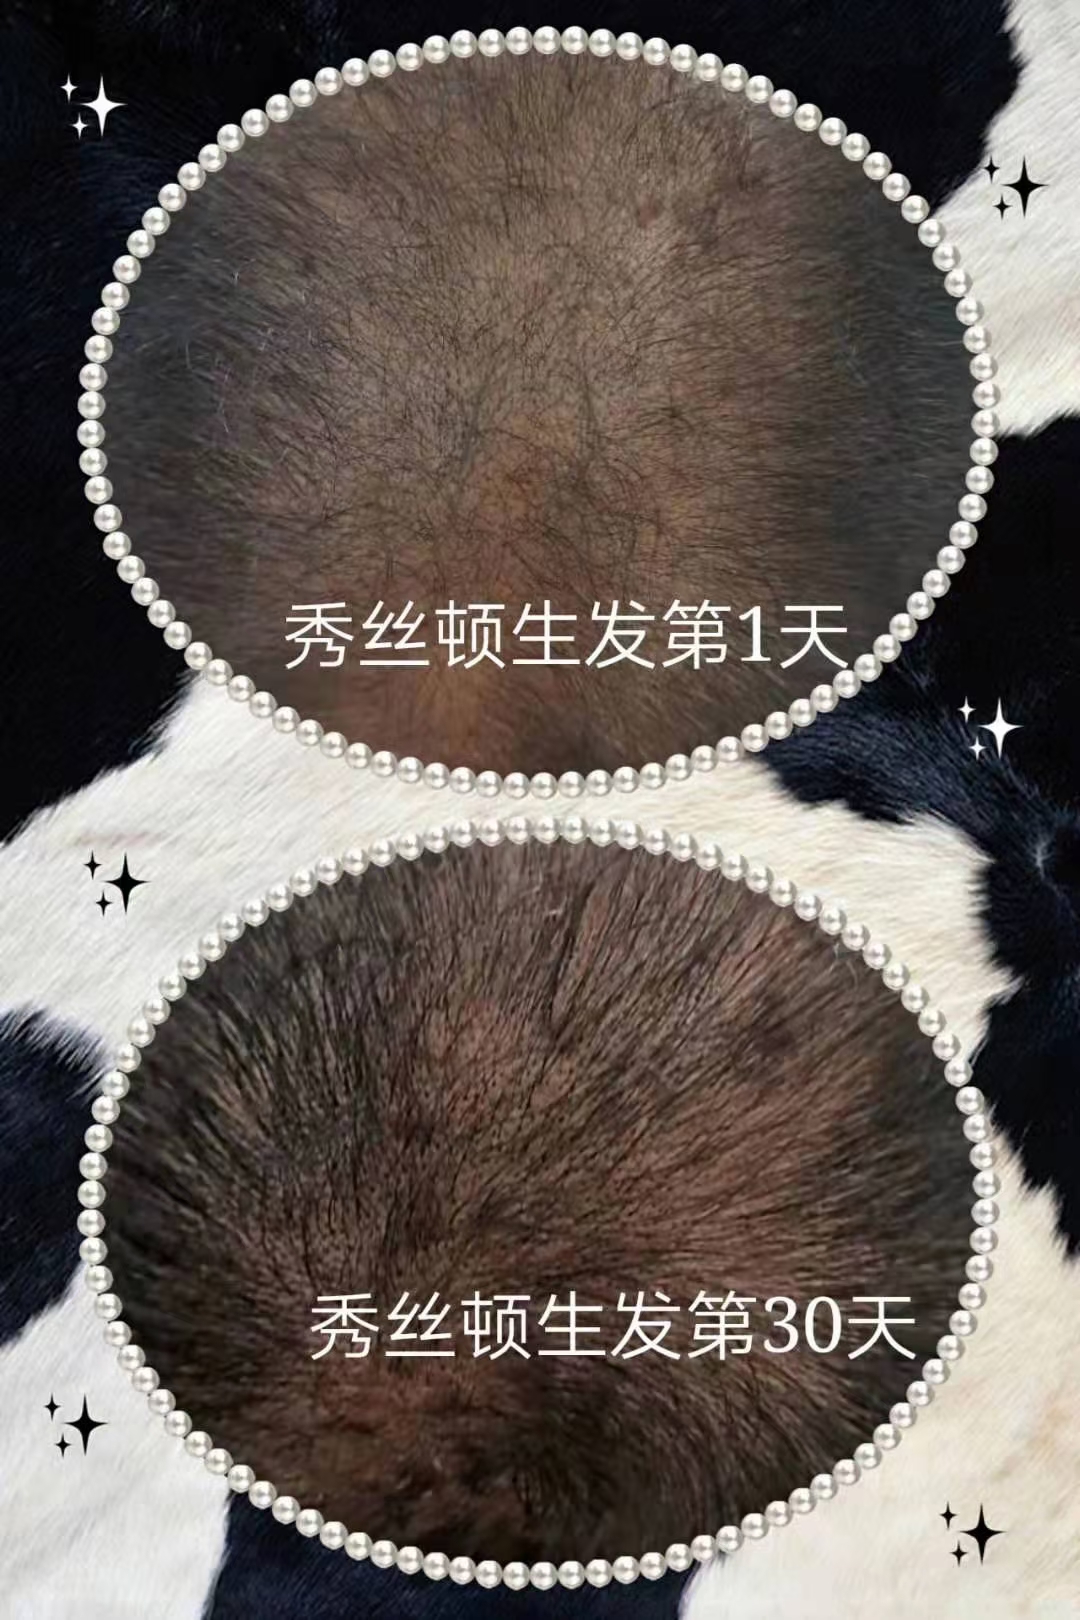 秀丝顿植物养发够滋养头皮，刺激毛囊，增加发丝的养分供应，从而达到改善白发、防止脱发